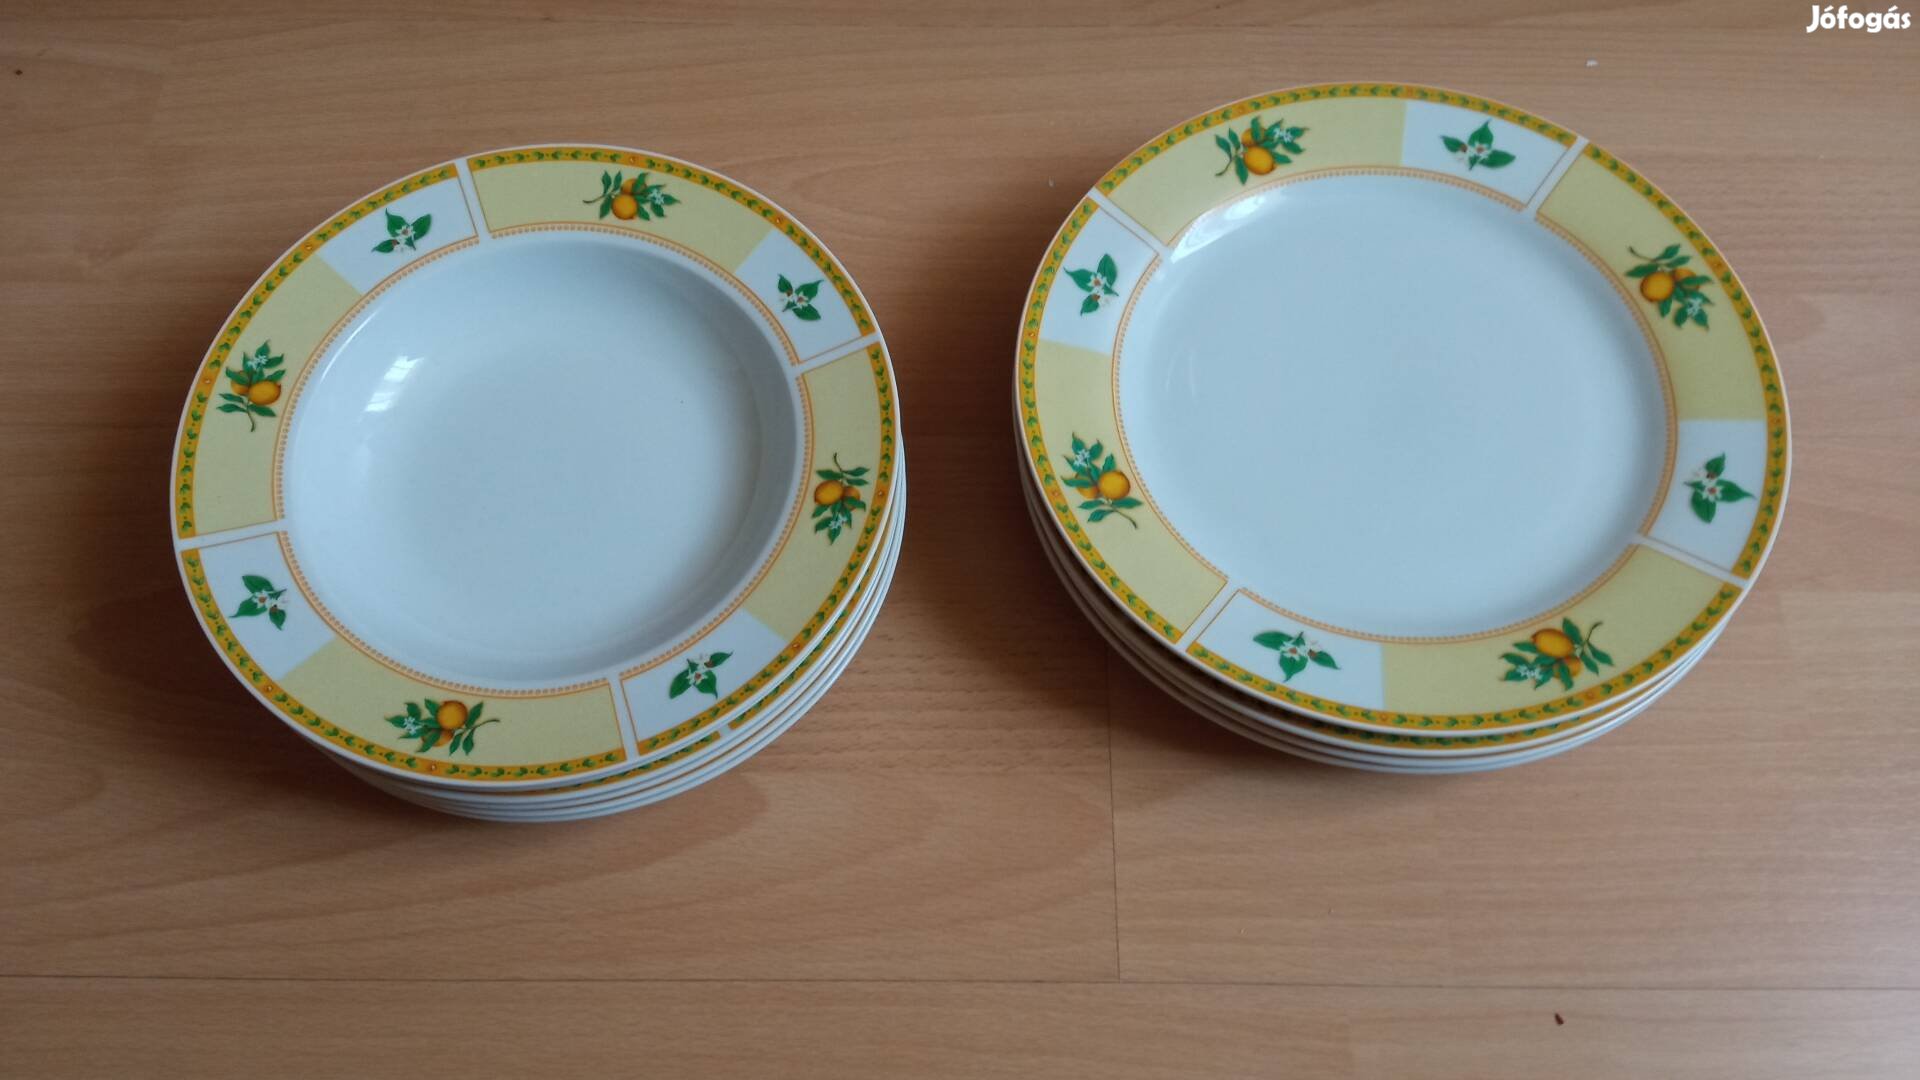 6 mély tányér+ 5 lapos tányér sárga mintával 2000 Ft